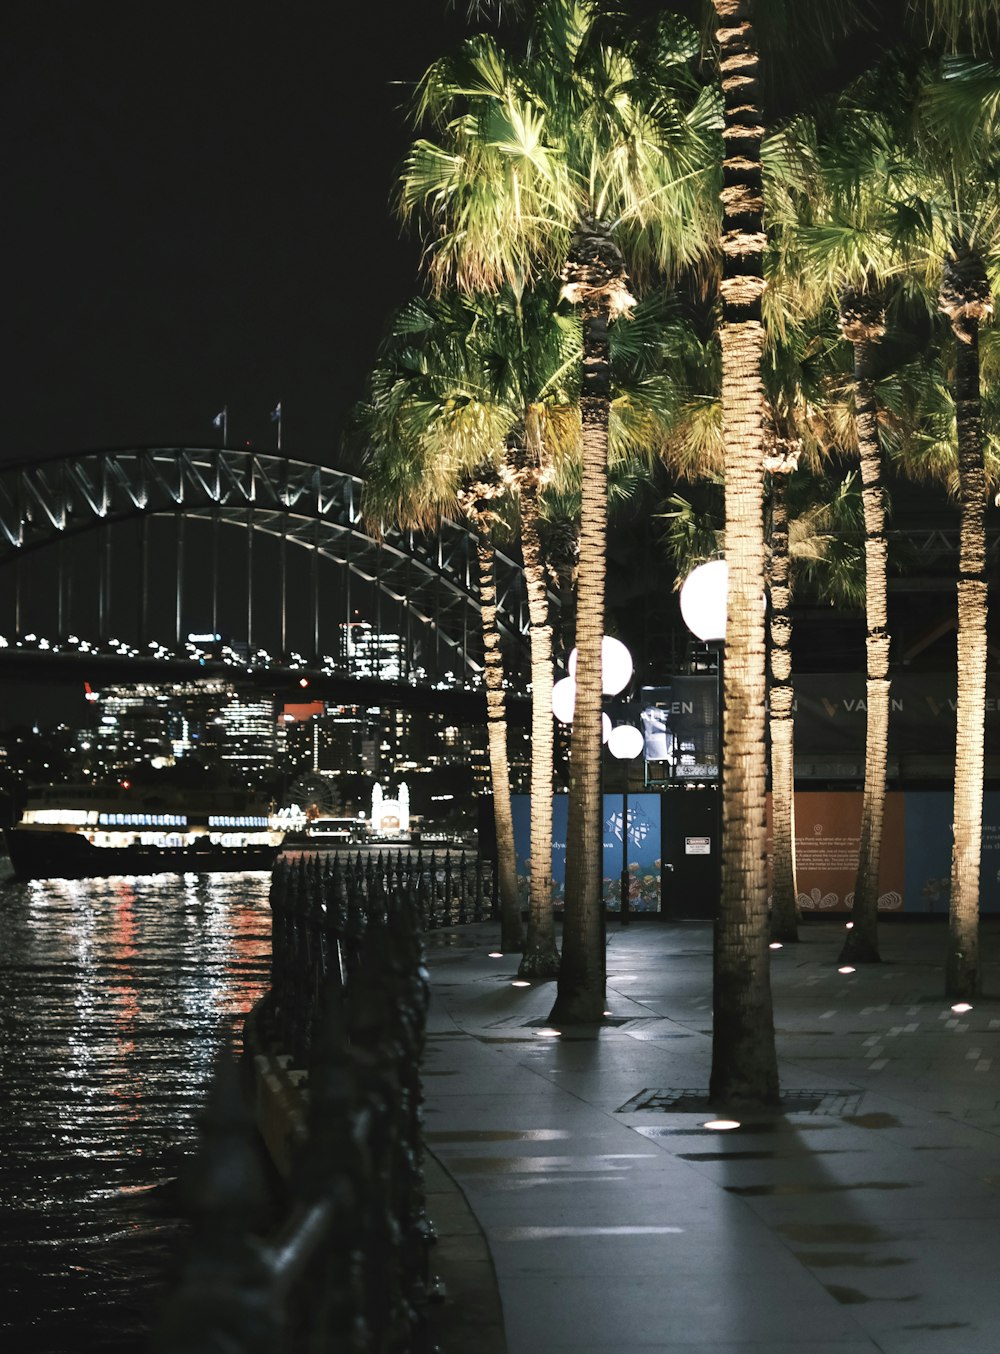 Palmen säumen nachts den Bürgersteig einer Uferpromenade